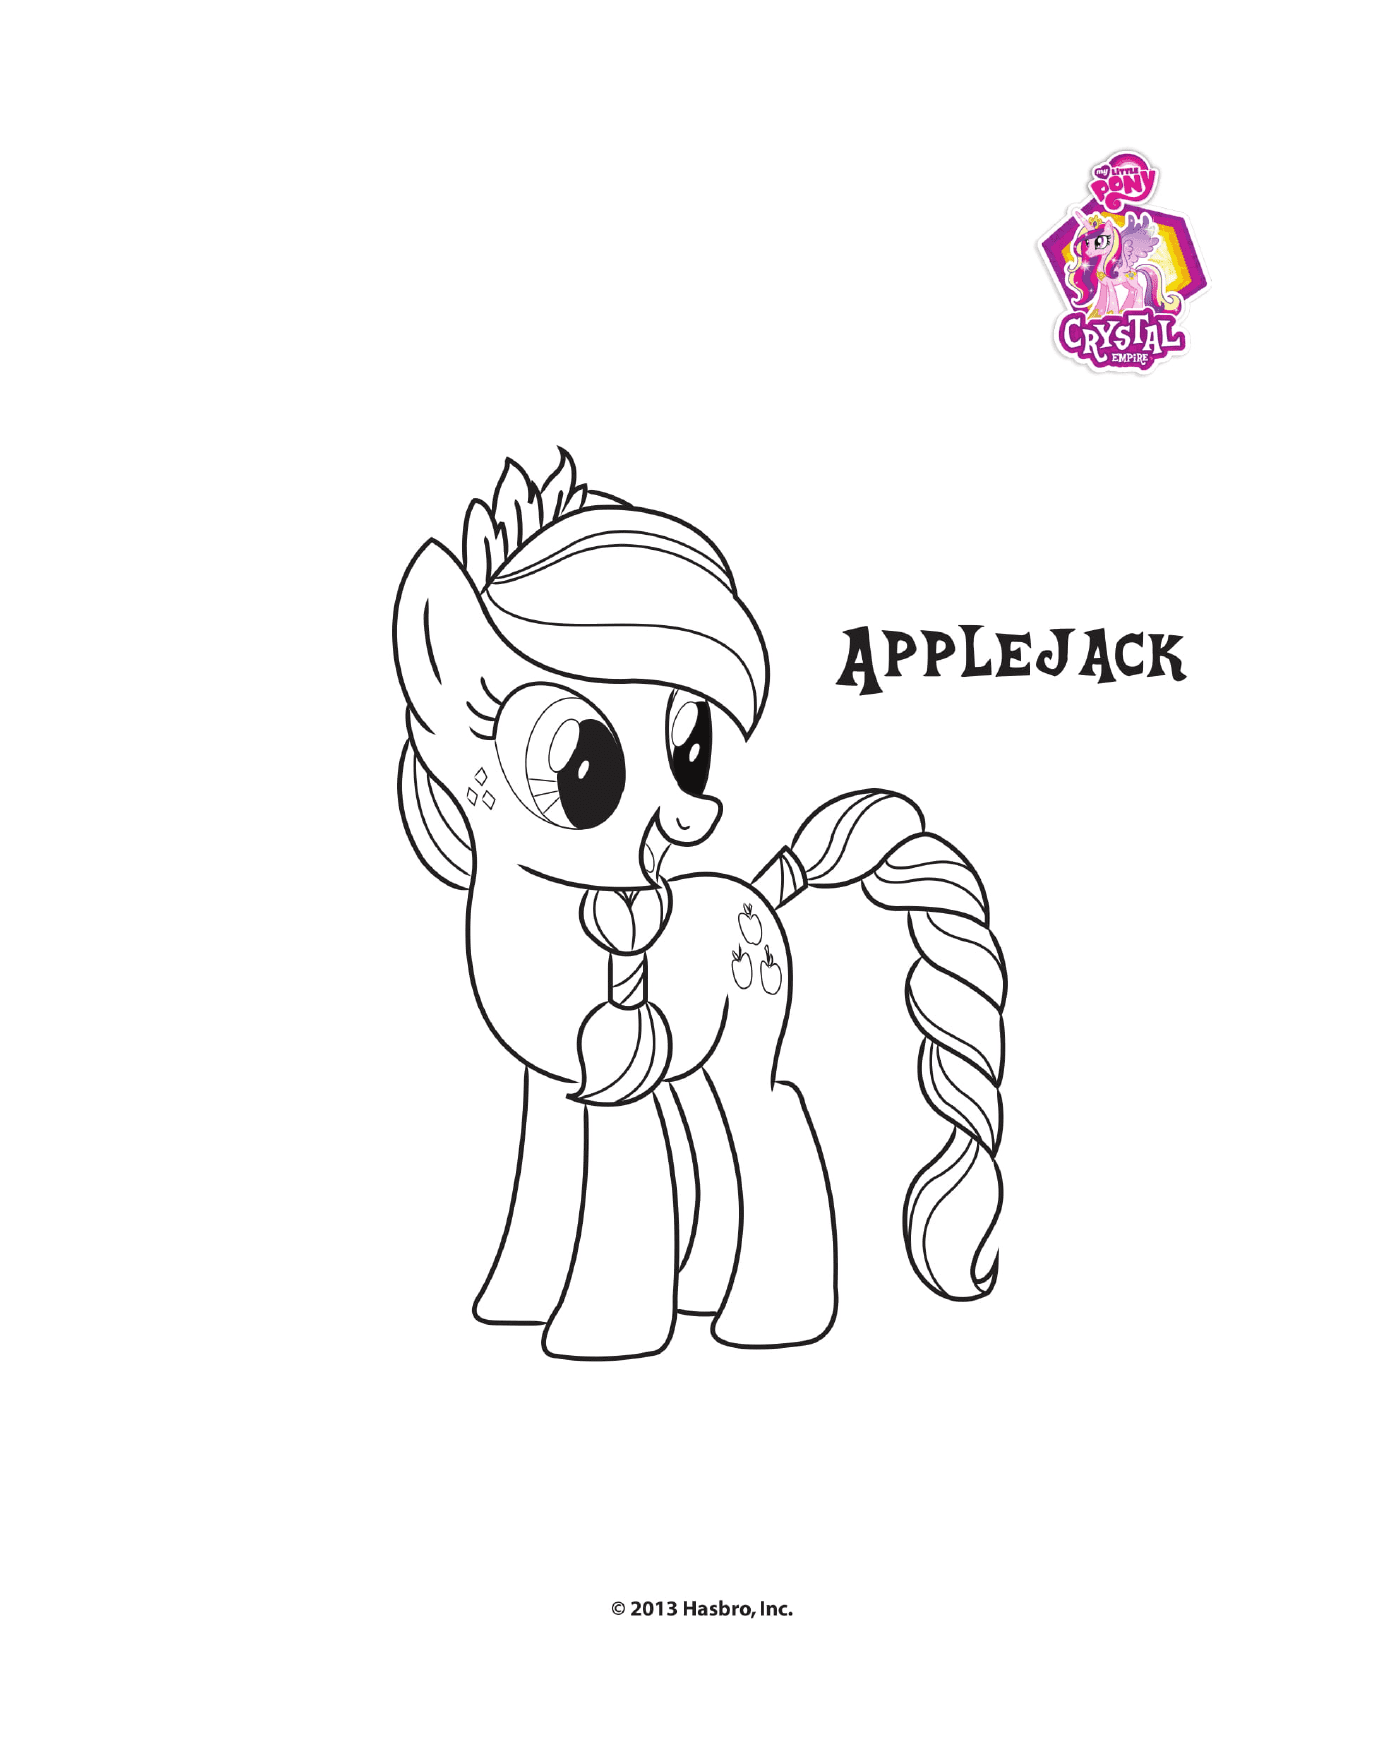  Applejack, the proud pony 